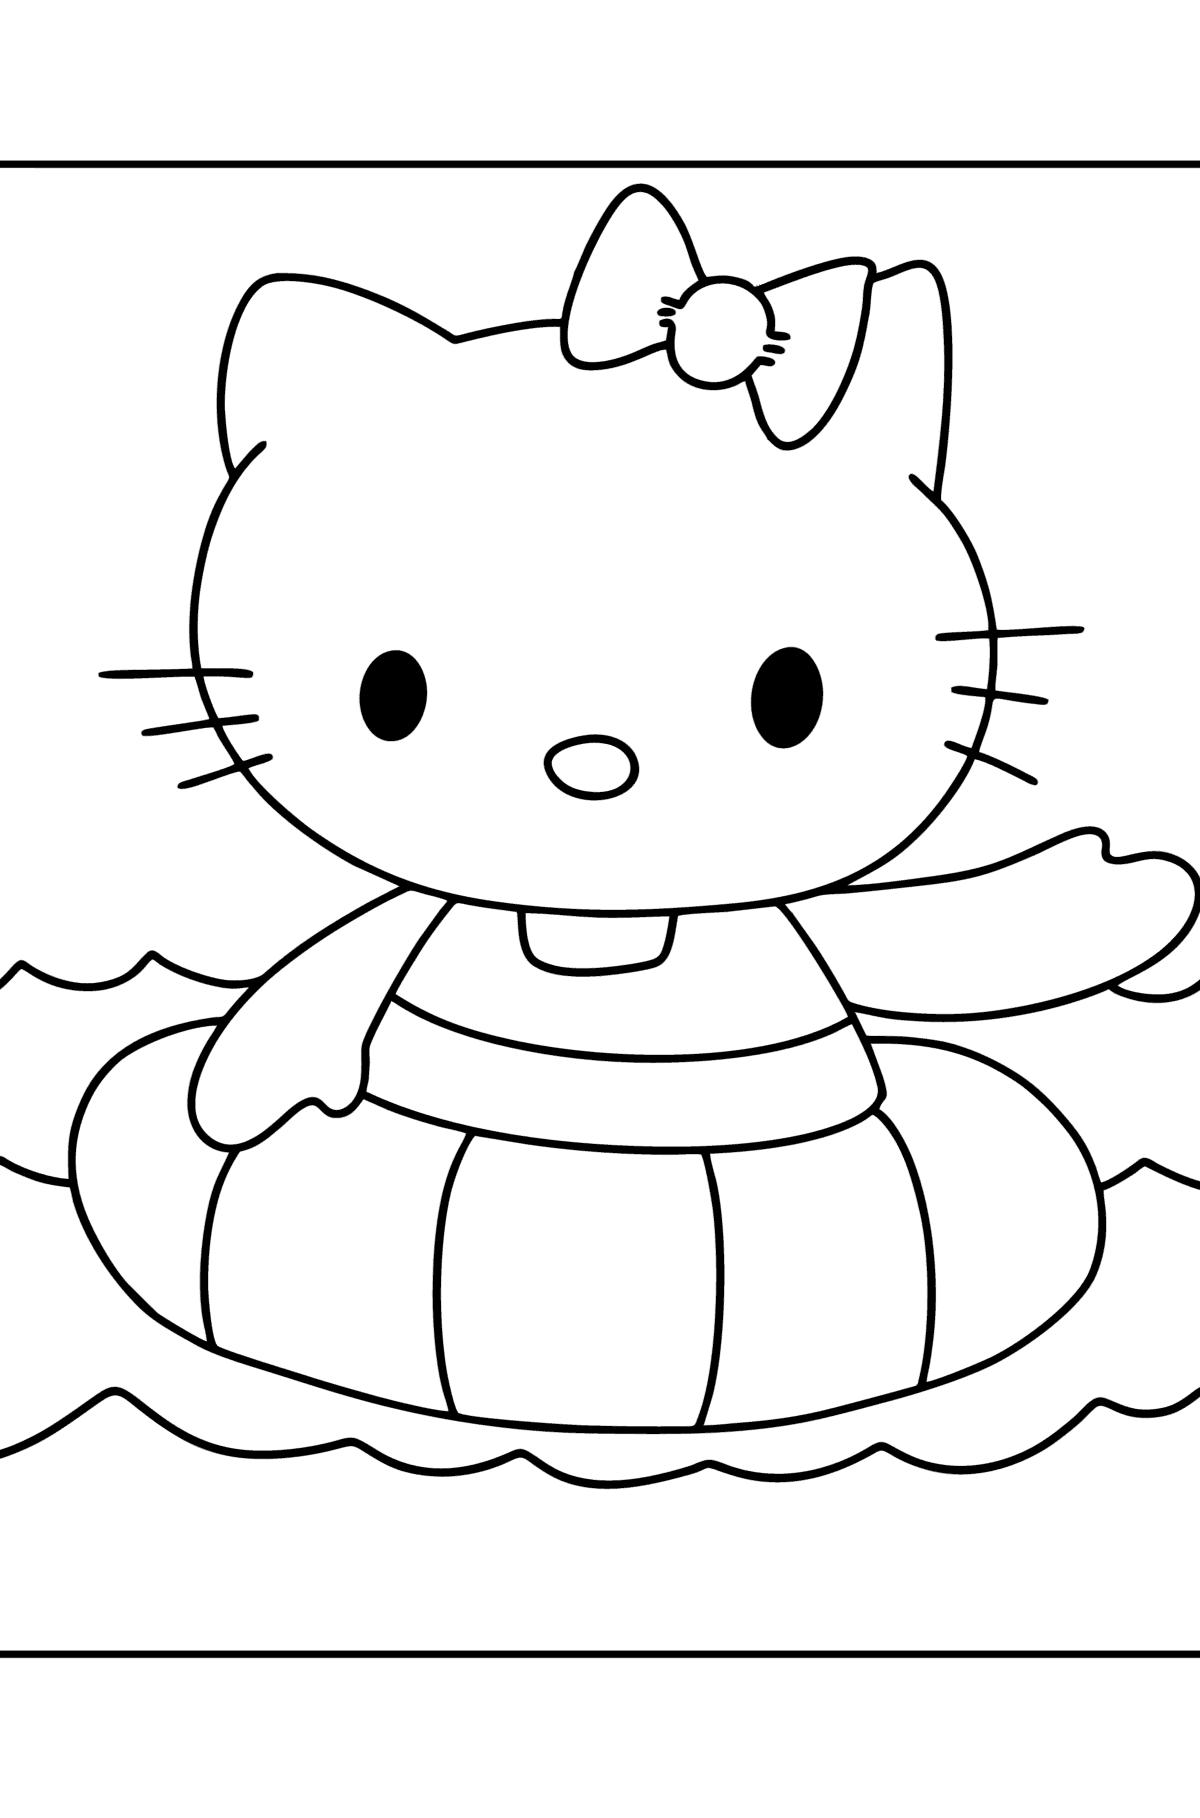 Kleurplaat Hello Kitty zwemt - kleurplaten voor kinderen